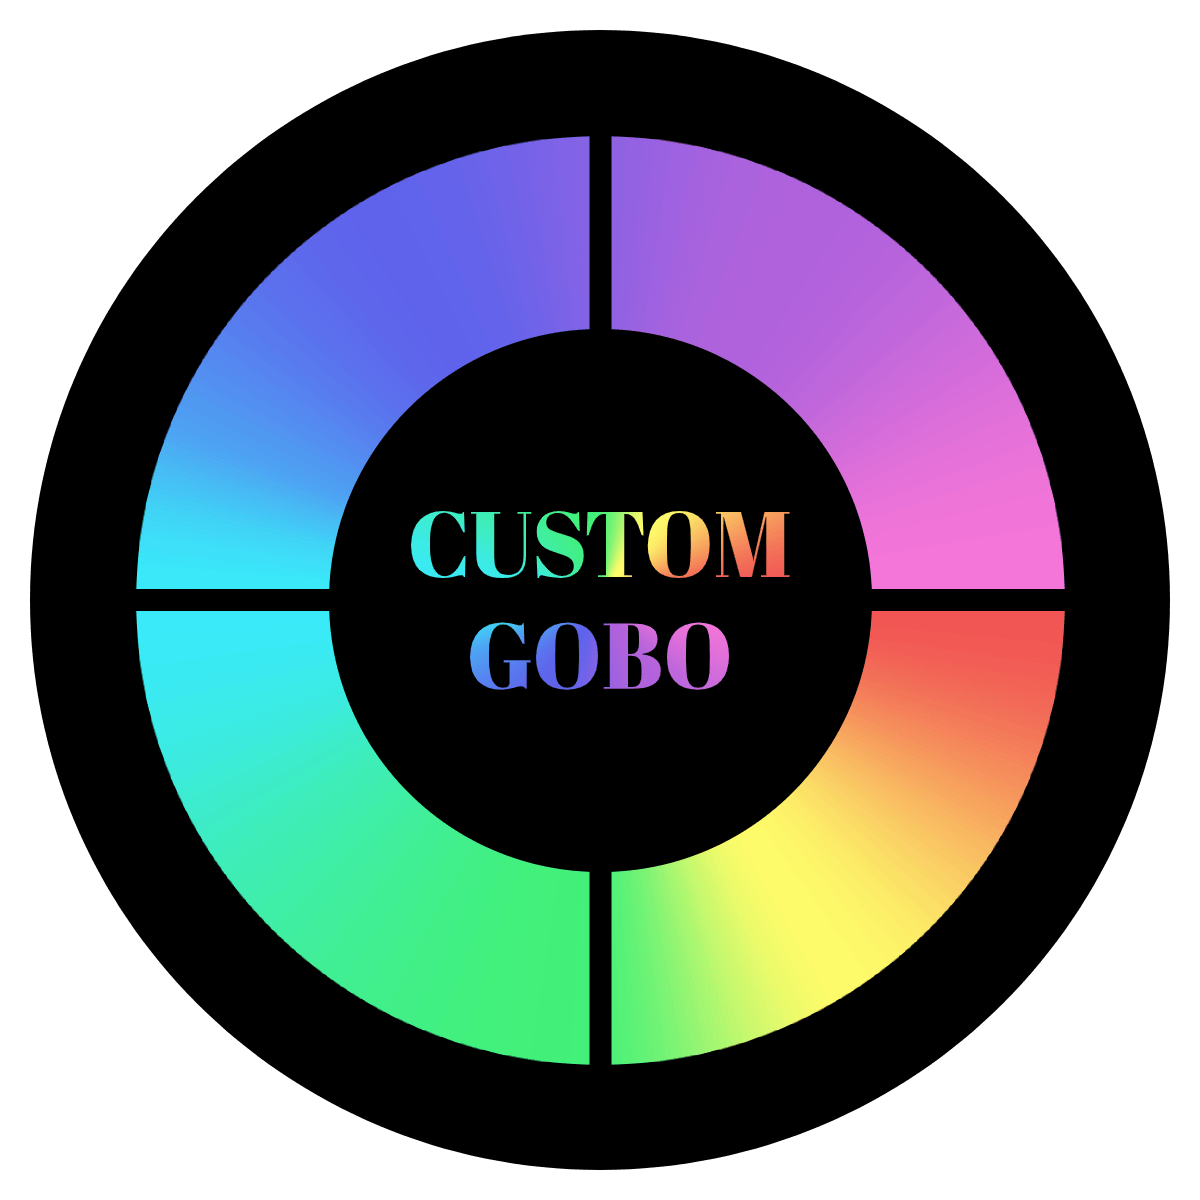 Instagobo custom gobo